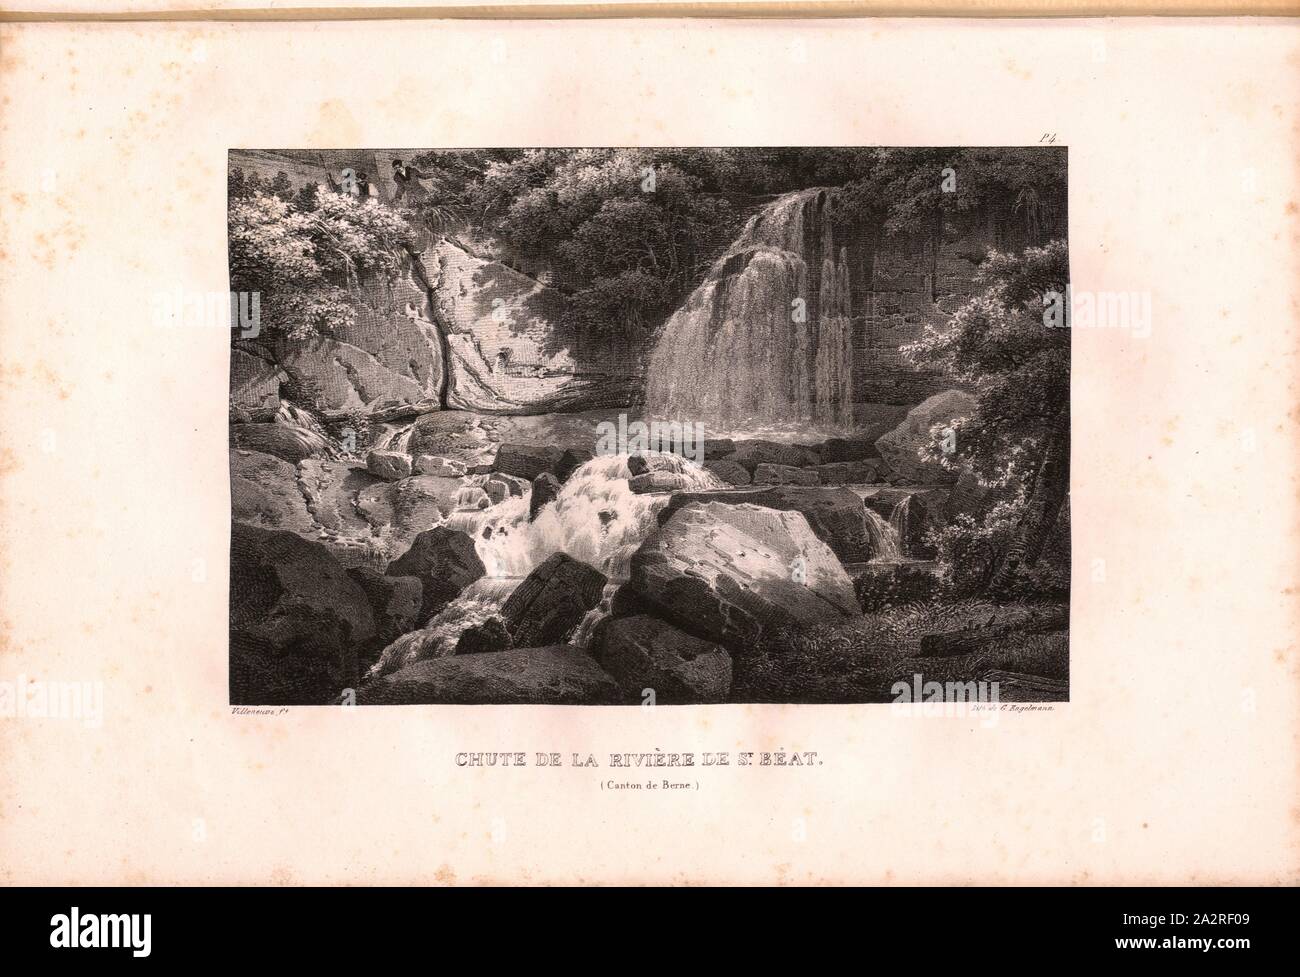 Fall of the St. Beatus River, Waterfall near the Beatus Caves, Signed: Villeneuve, G. Engelmann, lithograph, plate 4 (vol. 1, part 1), Villeneuve, M. (ft.); Engelmann, Godefroy (lith.), 1823, Hilaire Léon Sazerac, Godefroy Engelmann: Lettres sur la Suisse (...). Paris: [s.n.], 1823-1832 Stock Photo